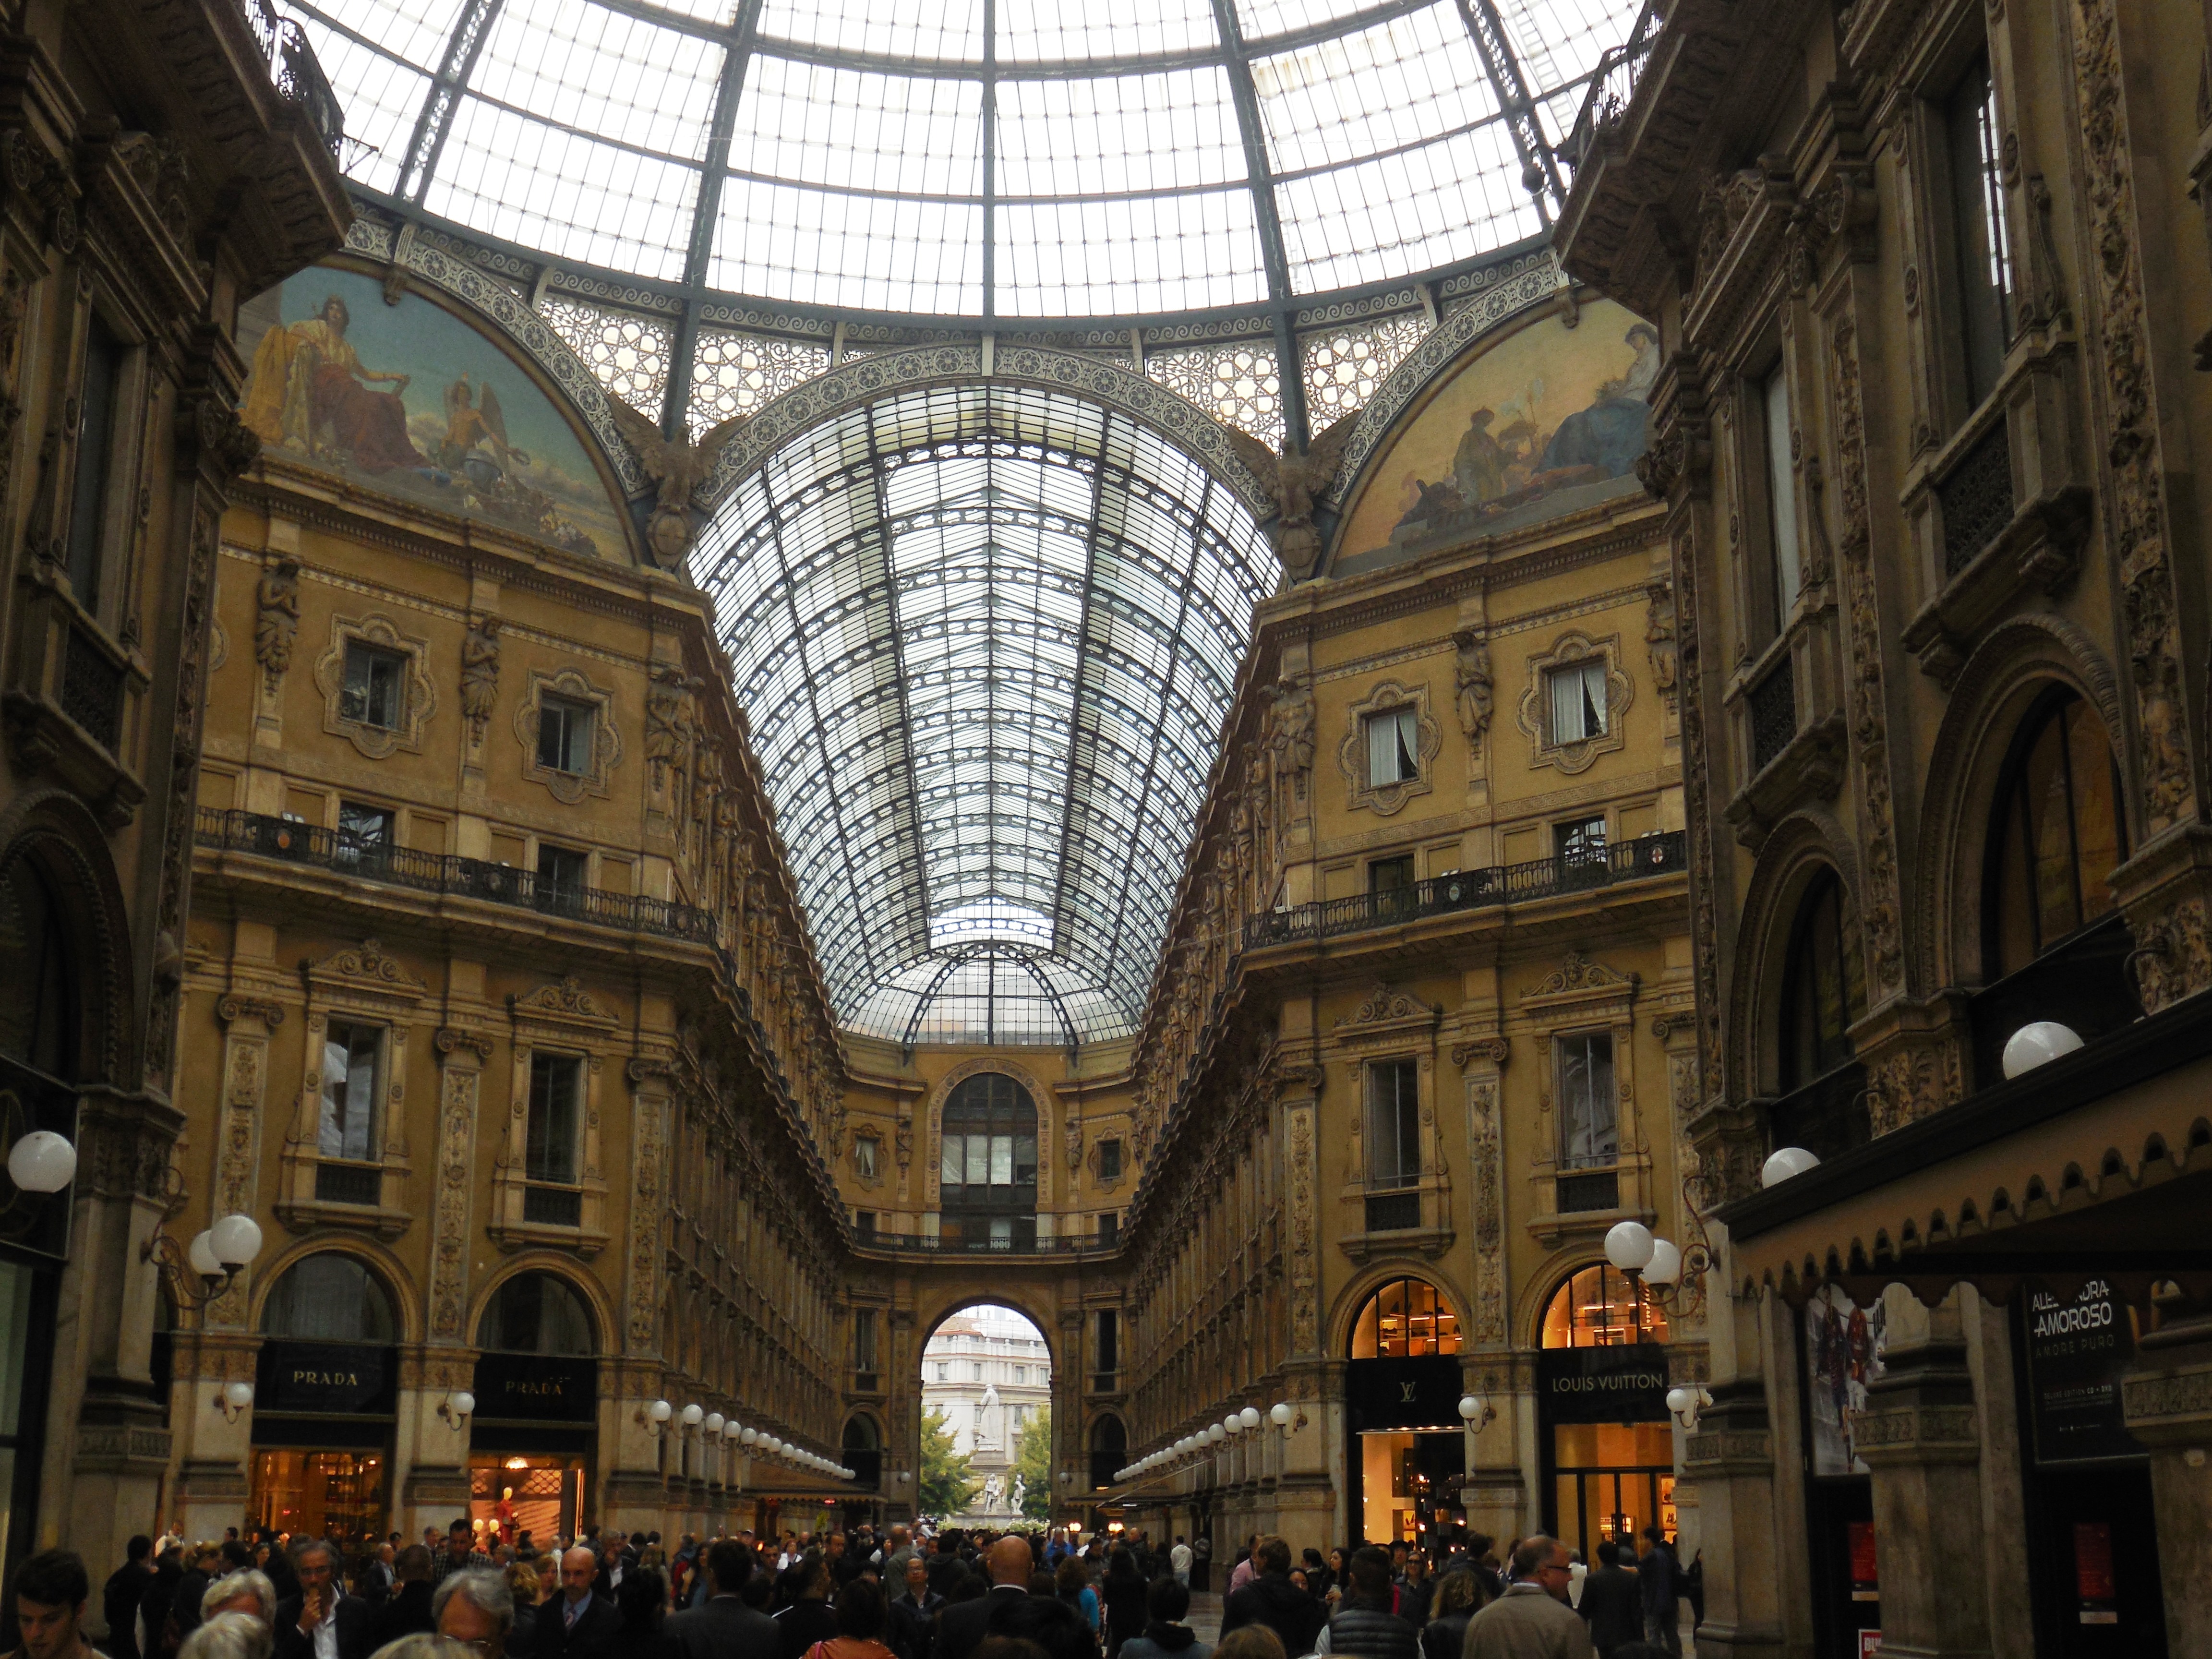 Galleria Vittorio Emanuele.